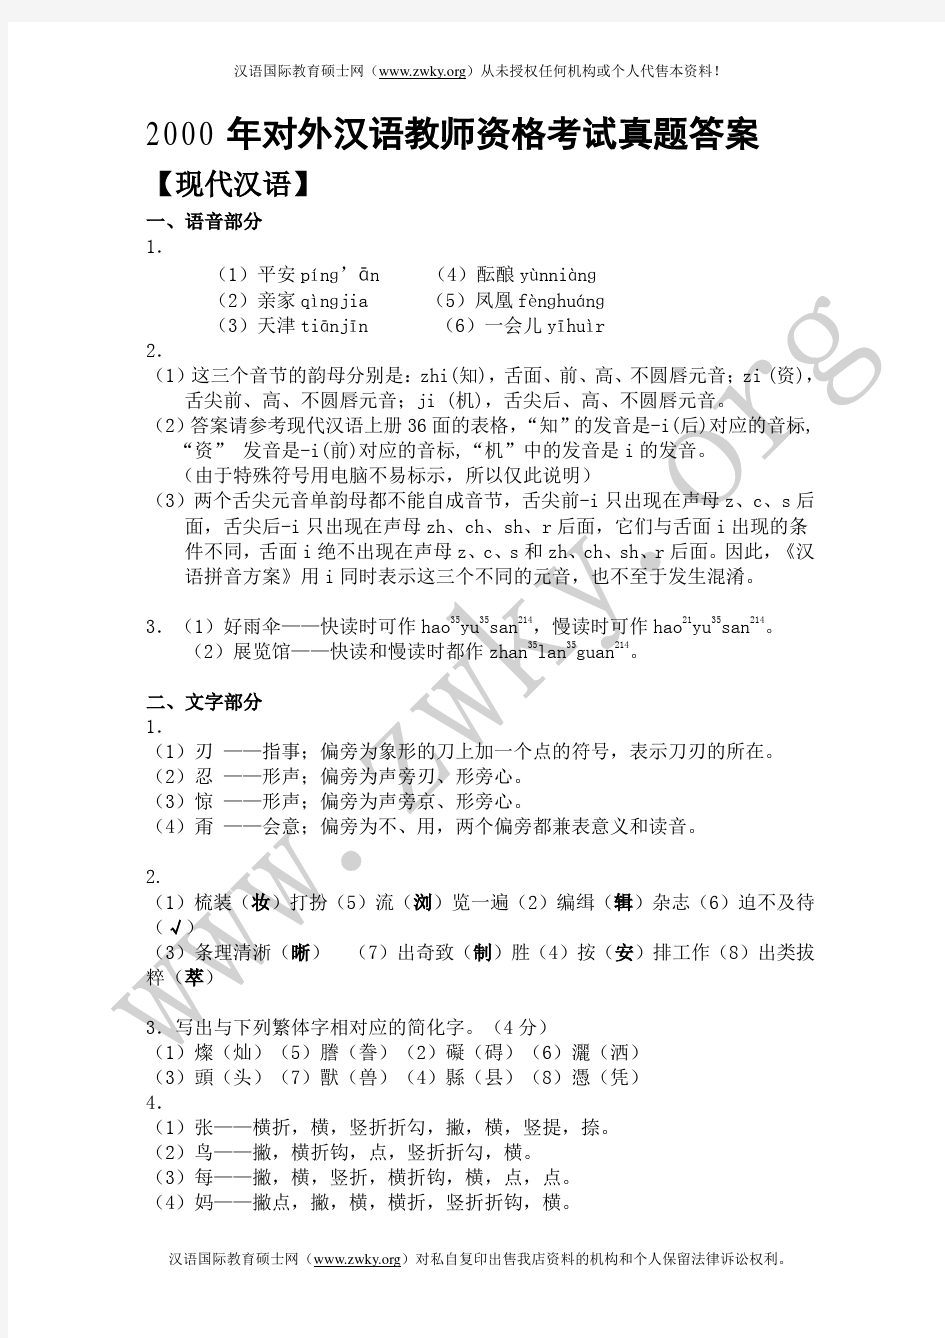 2000对外汉语教师资格考试(答案)